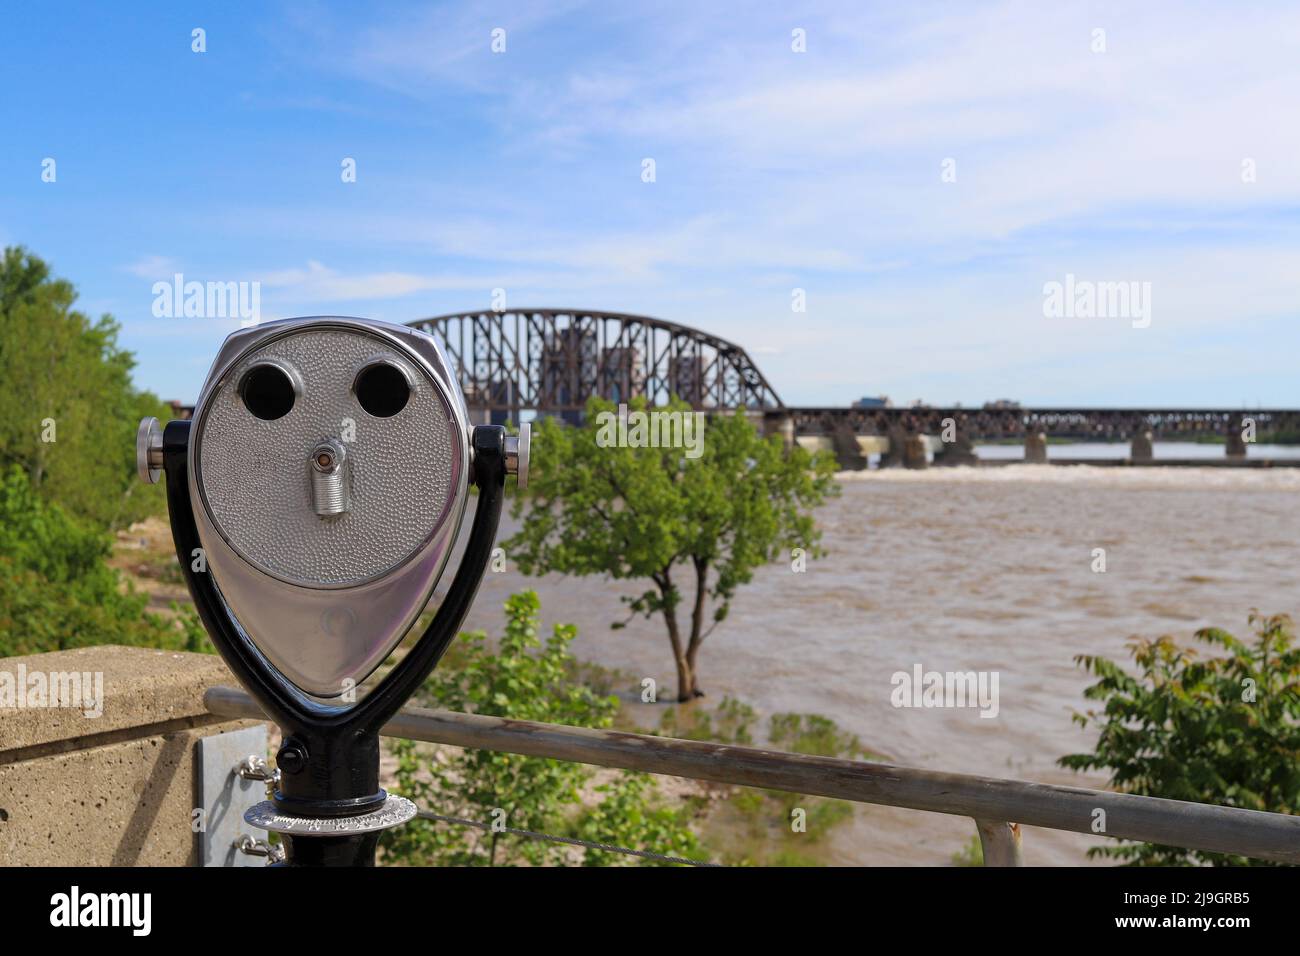 tourist binoculars overlooking the Ohio River in Louisville, Kentucky Stock Photo